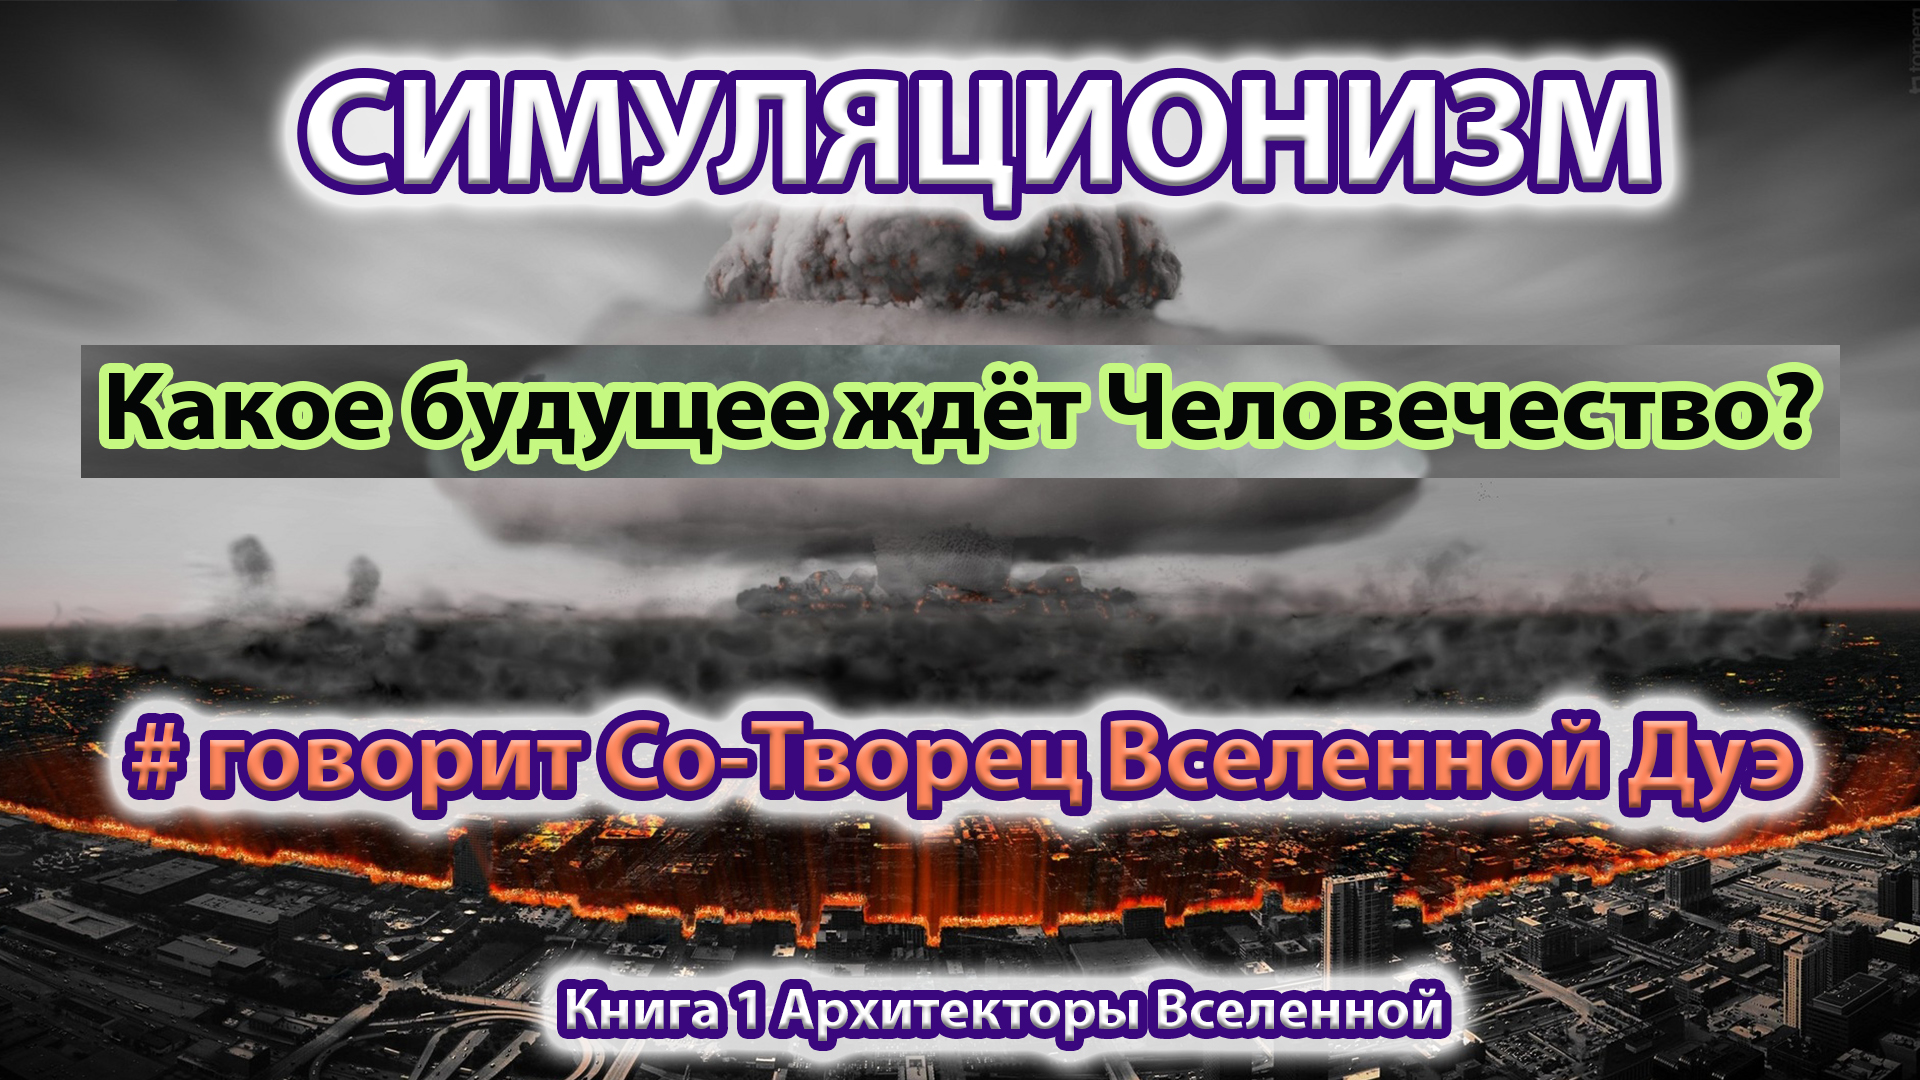 Война на украине 18 телеграмм без цензуры фото 27